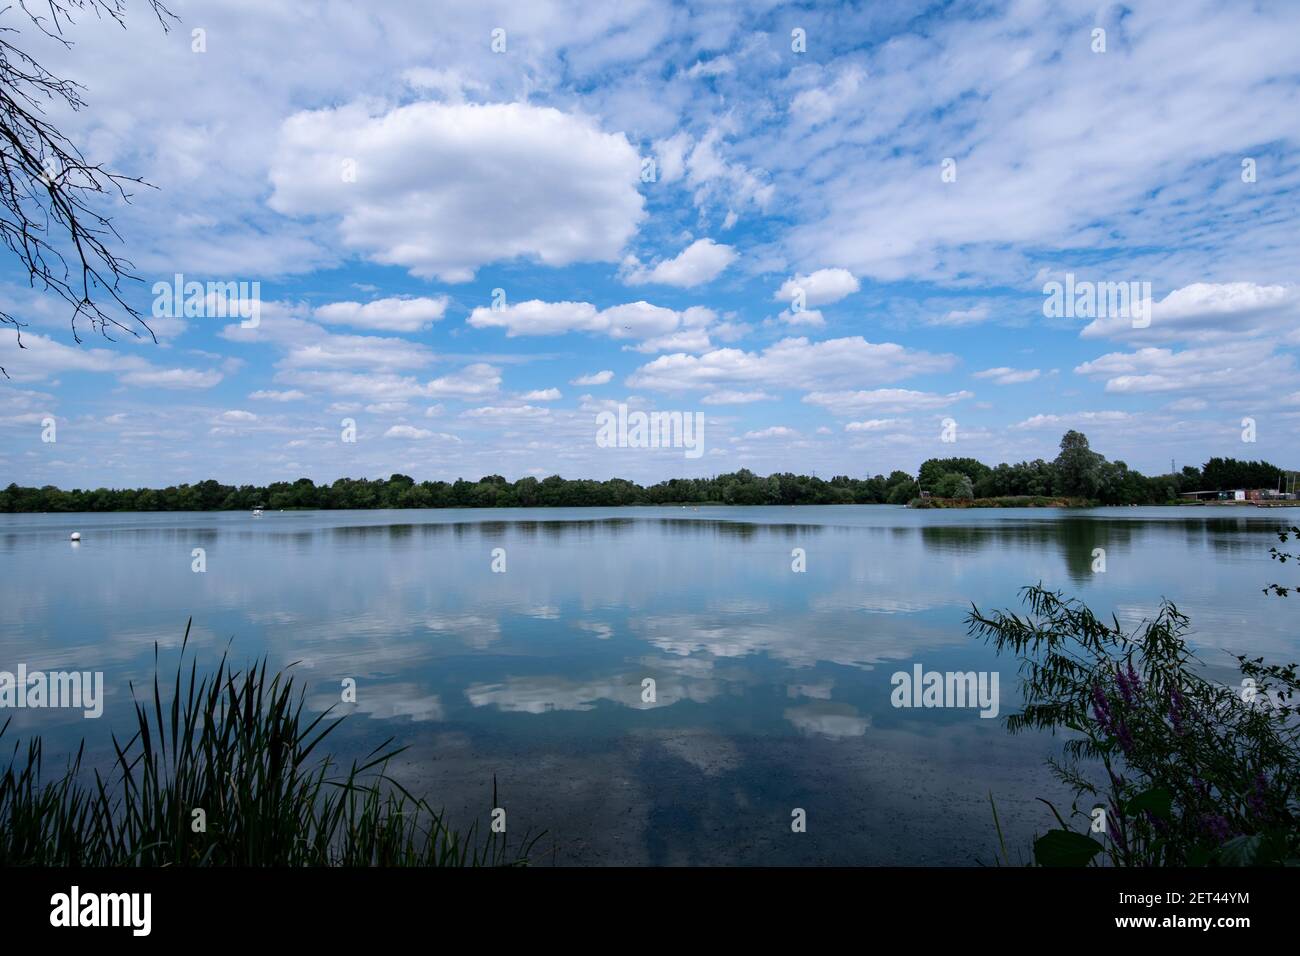 Ein Blick auf den Wraysbury Lake in der Nähe von Heathrow, Teil eines großen Naturschutzgebietes und Standort von besonderem wissenschaftlichen Interesse. Stockfoto